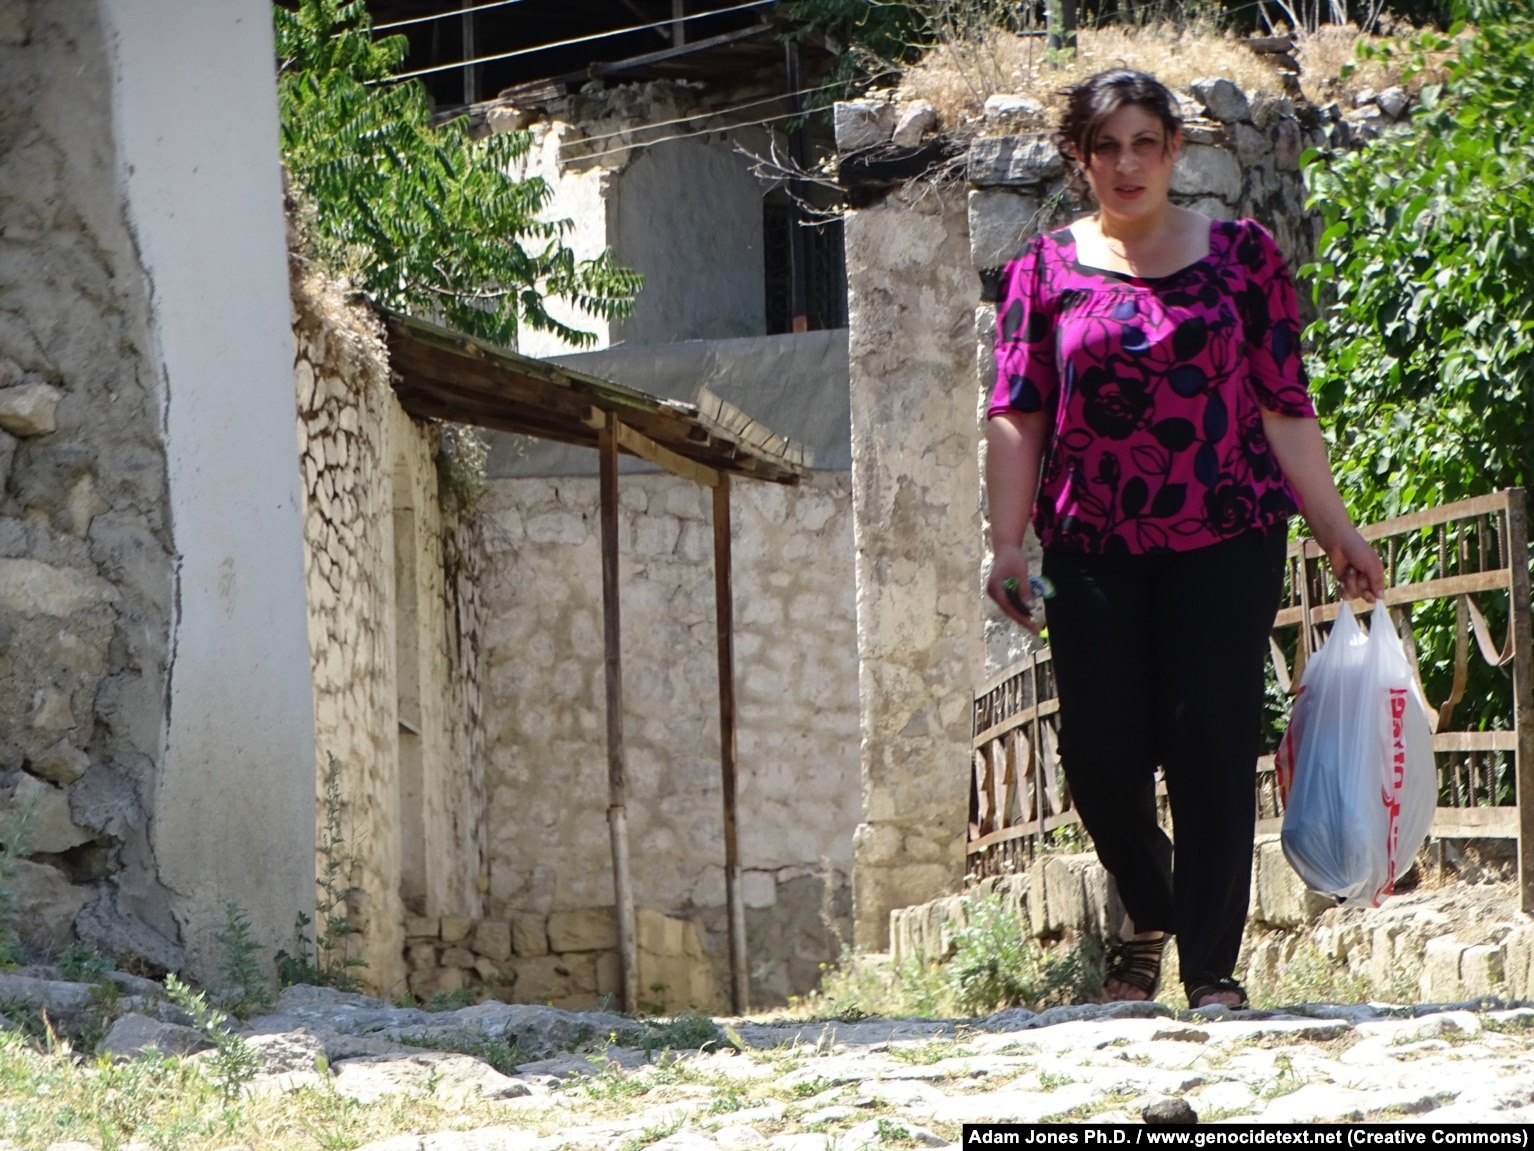 Një banore e zonës duke ecur në Dasalti/Karintak, në qershor të vitit 2015.